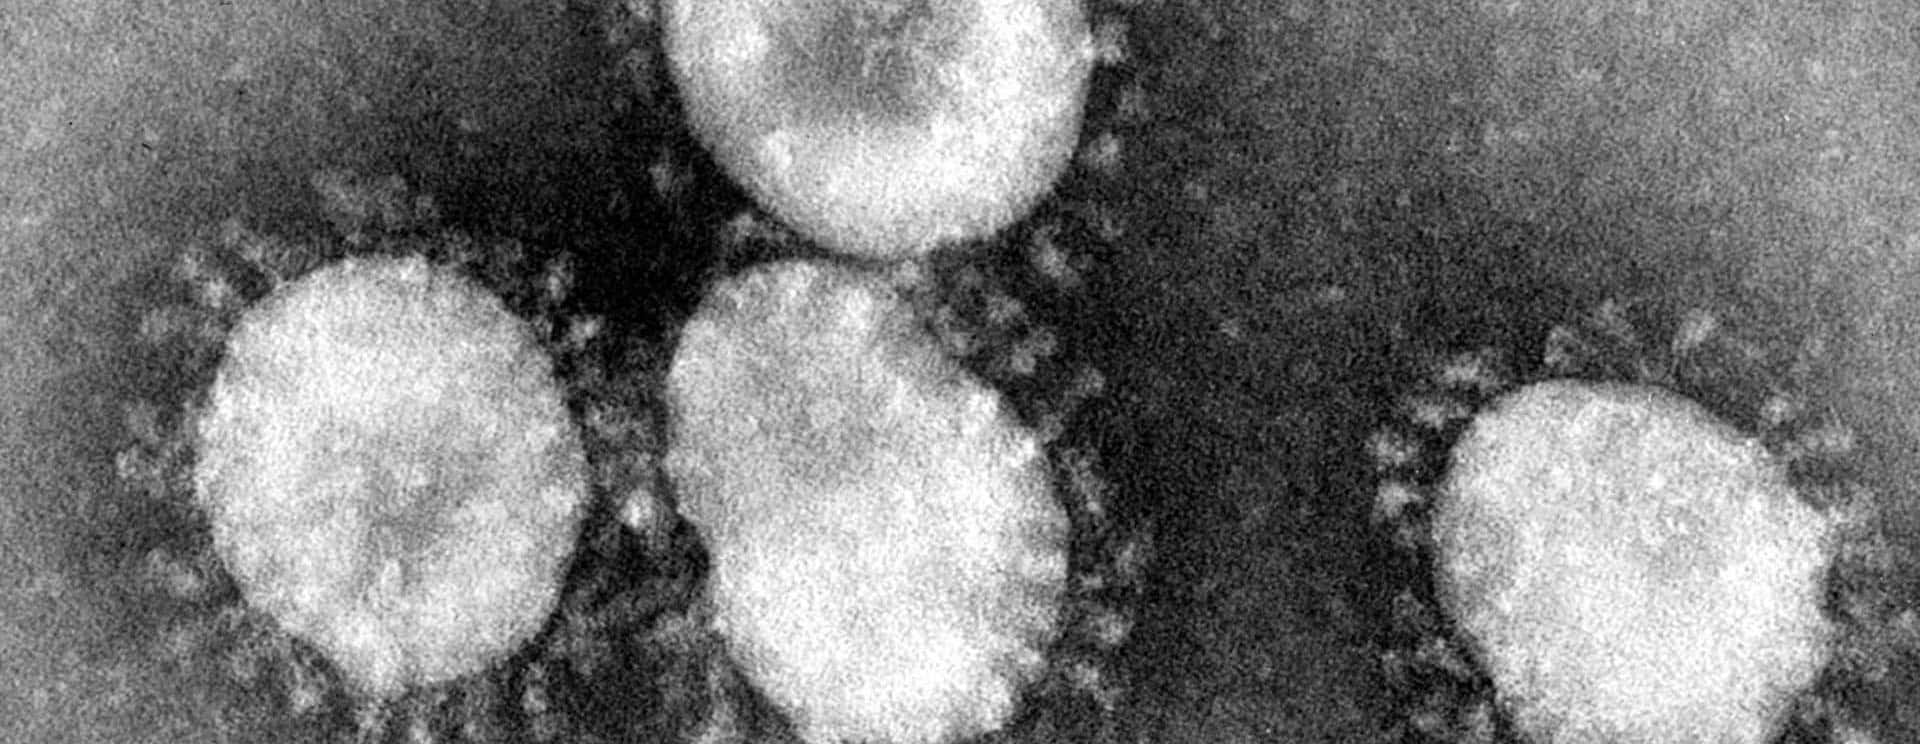 coronaviruses-jpg-45